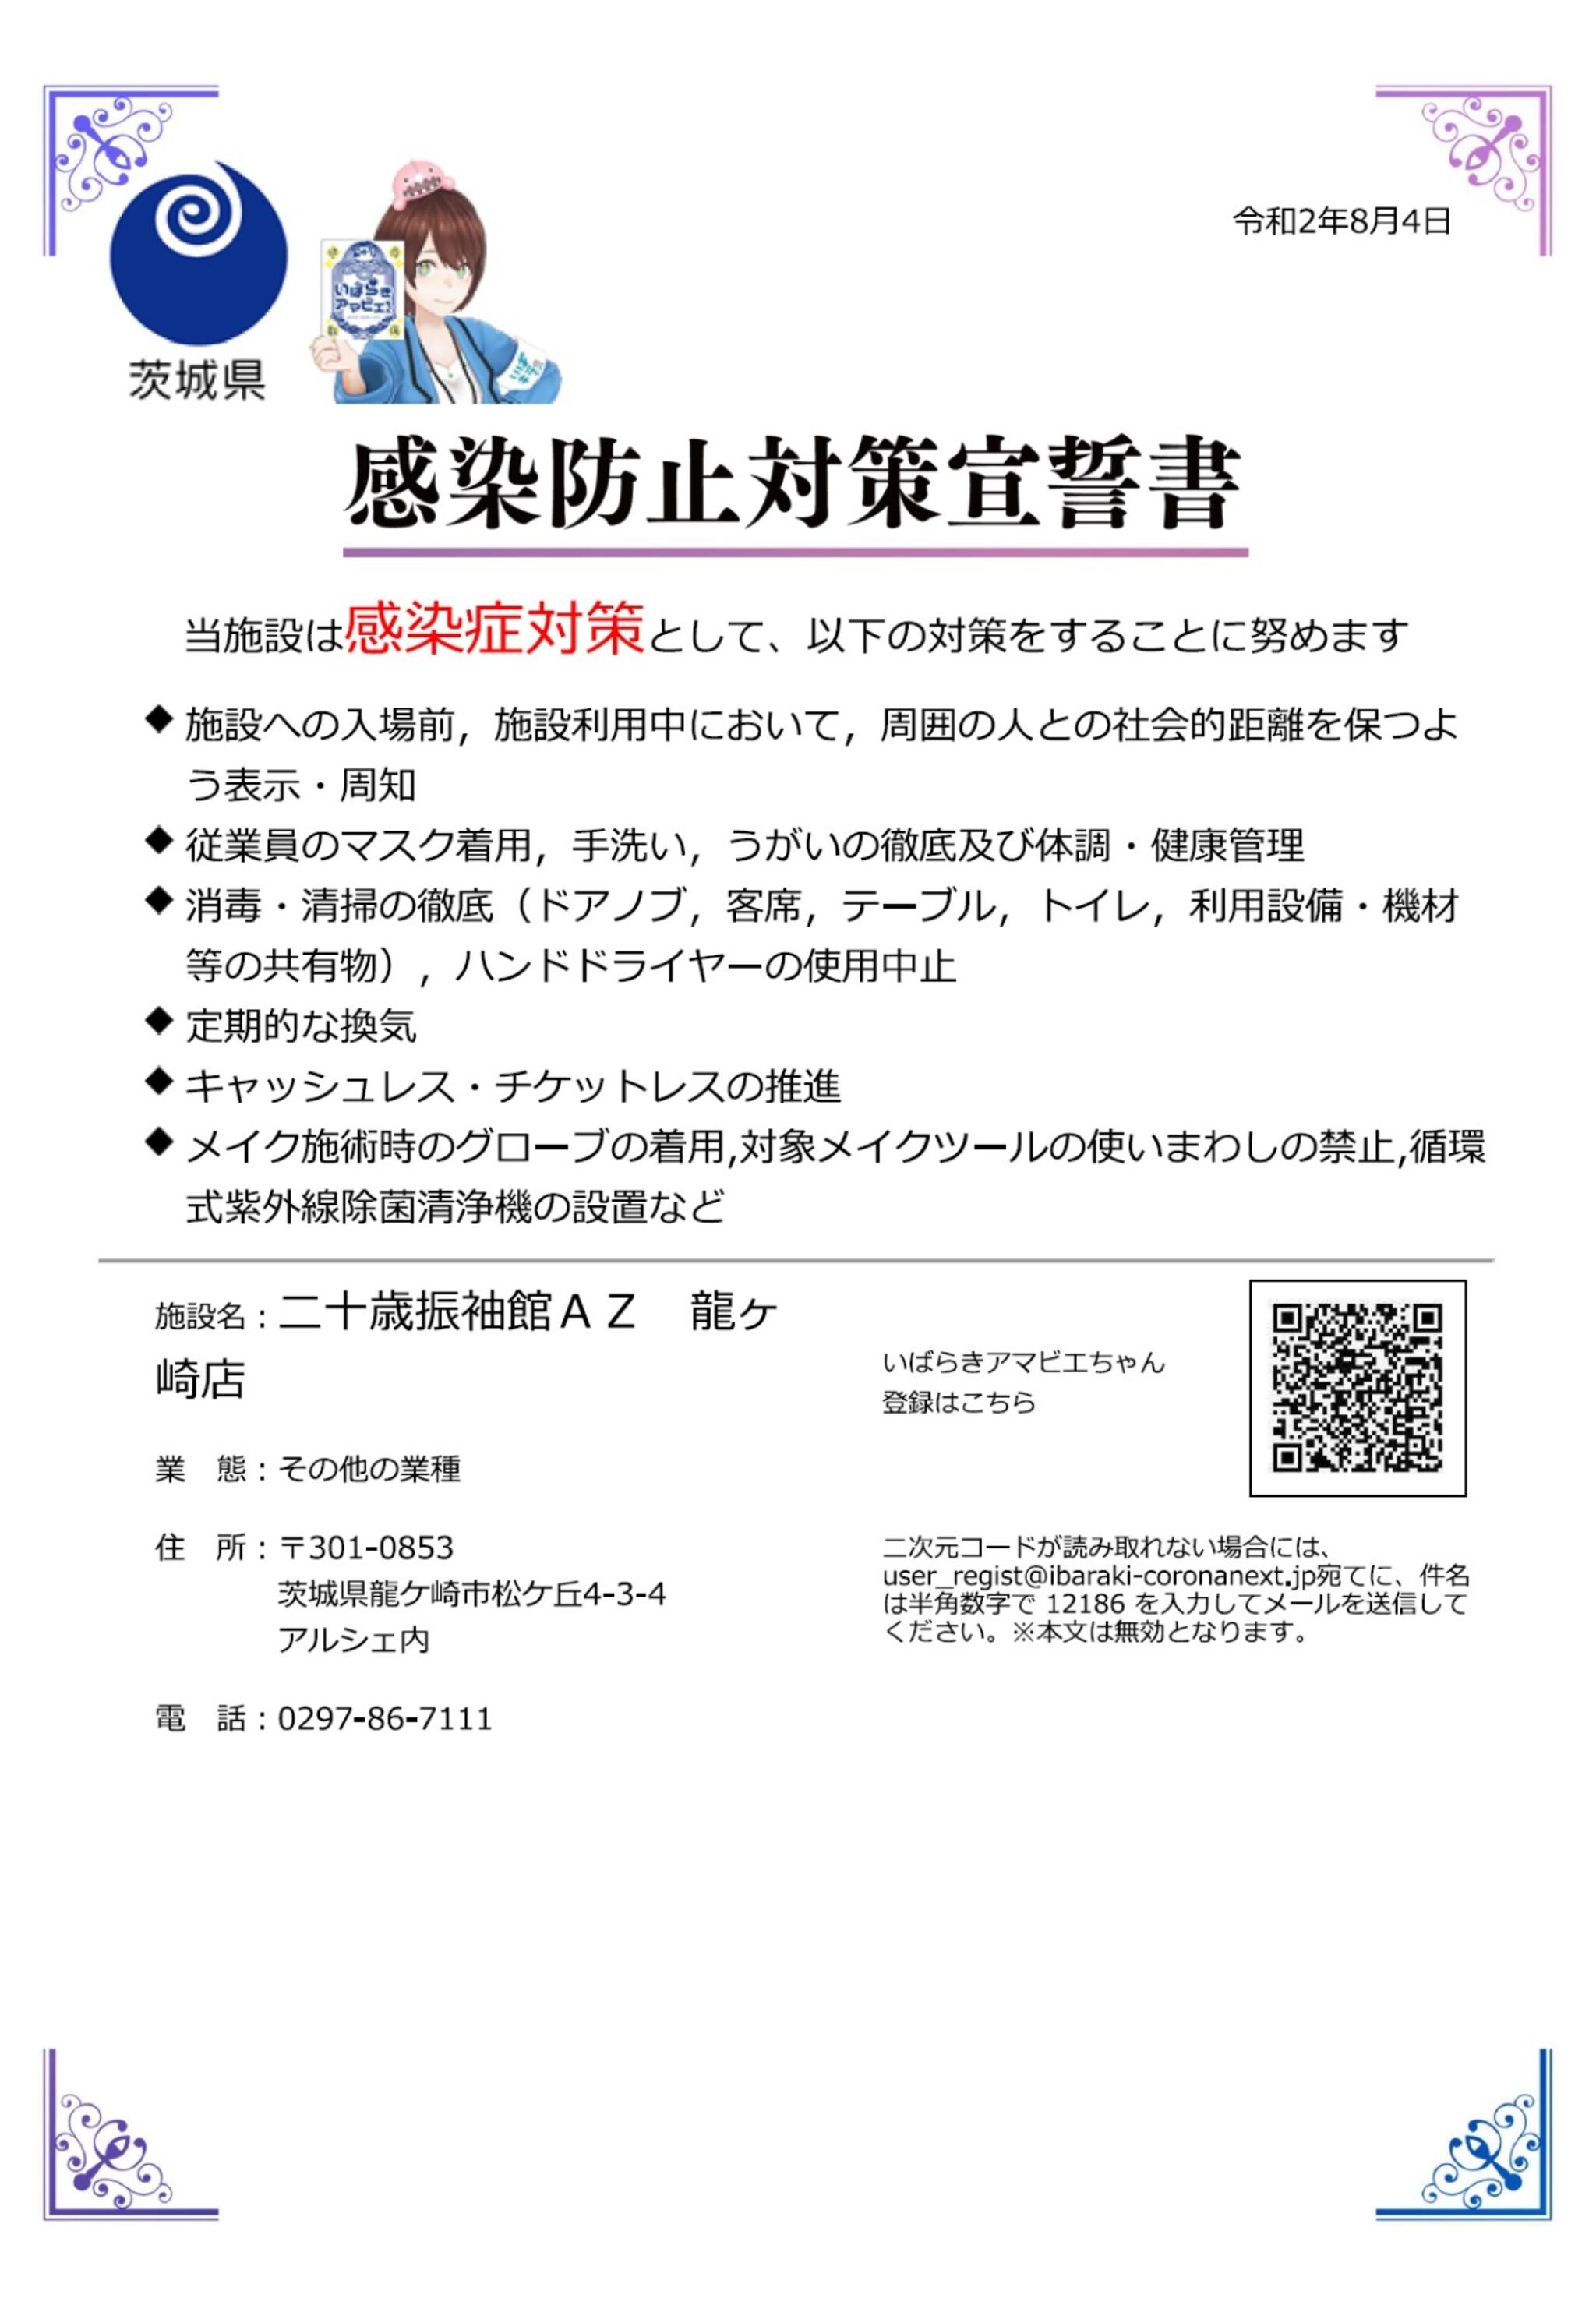 二十歳振袖館Az 龍ケ崎店からのお知らせ(茨城県の感染拡大の防止を目的とした「いばらきアマビエちゃん」の導入に賛同し参加をしました。)に関する写真